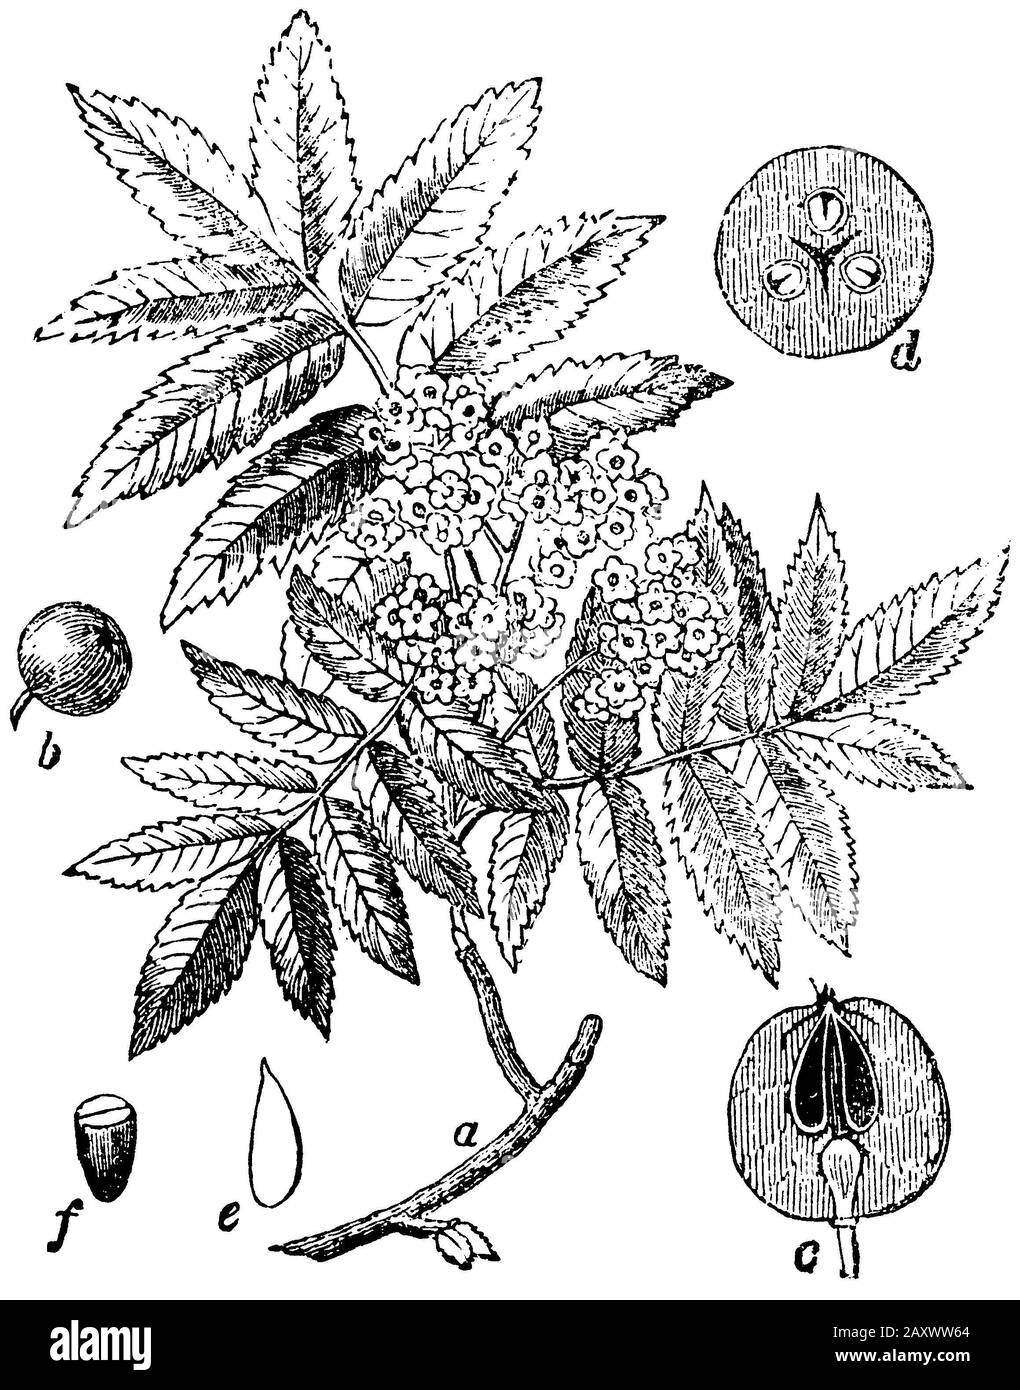 Rowan, frêne de montagne, Sorbus aucuparia, (encyclopédie, 1893) Banque D'Images